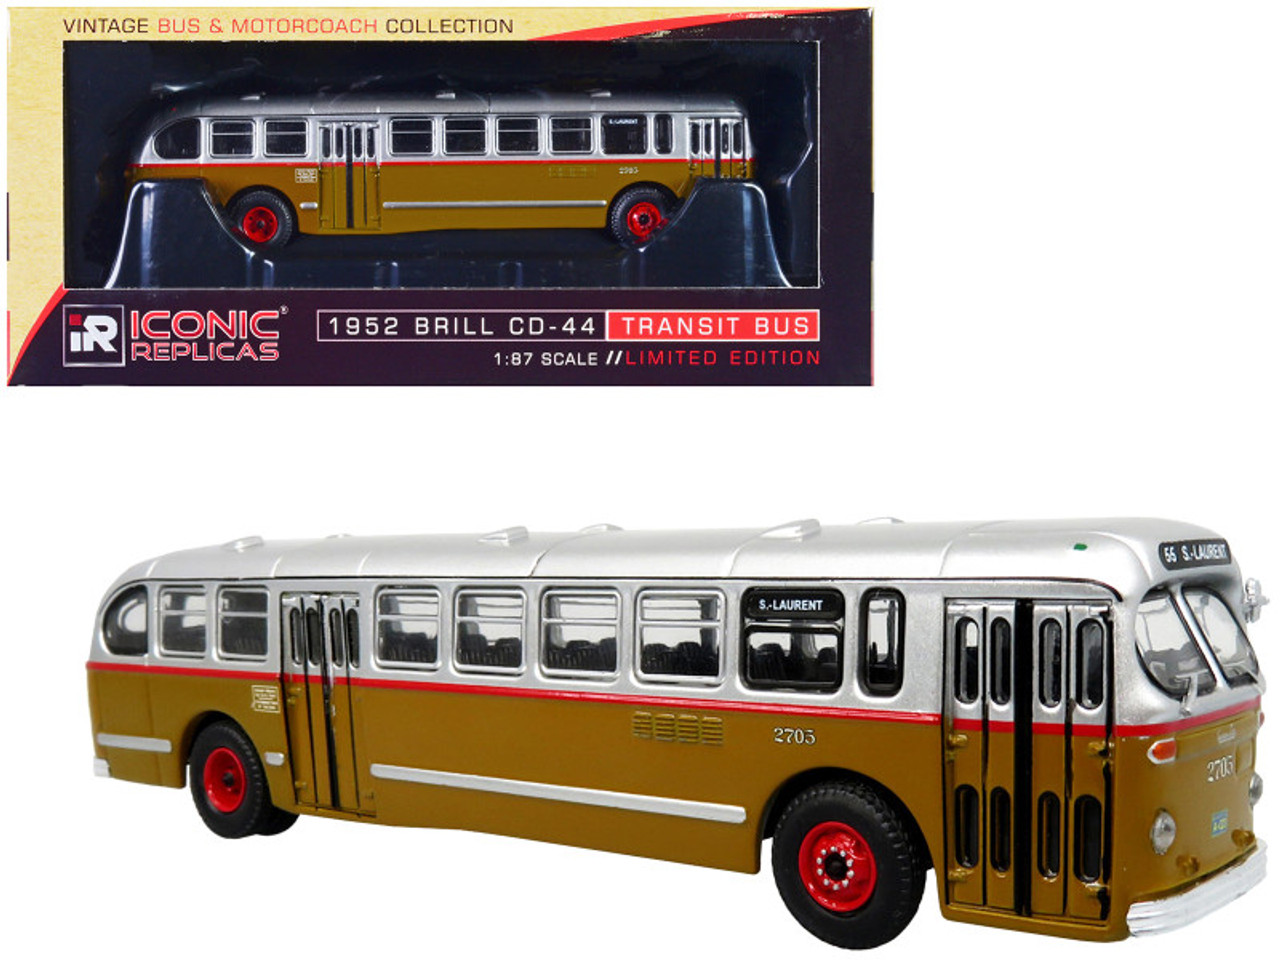 1952 CCF-Brill CD-44 Transit Bus STM (Societe de Transport de Montreal) "S-Laurent" "Vintage Bus & Motorcoach Collection" 1/87 (HO) Diecast Model by Iconic Replicas